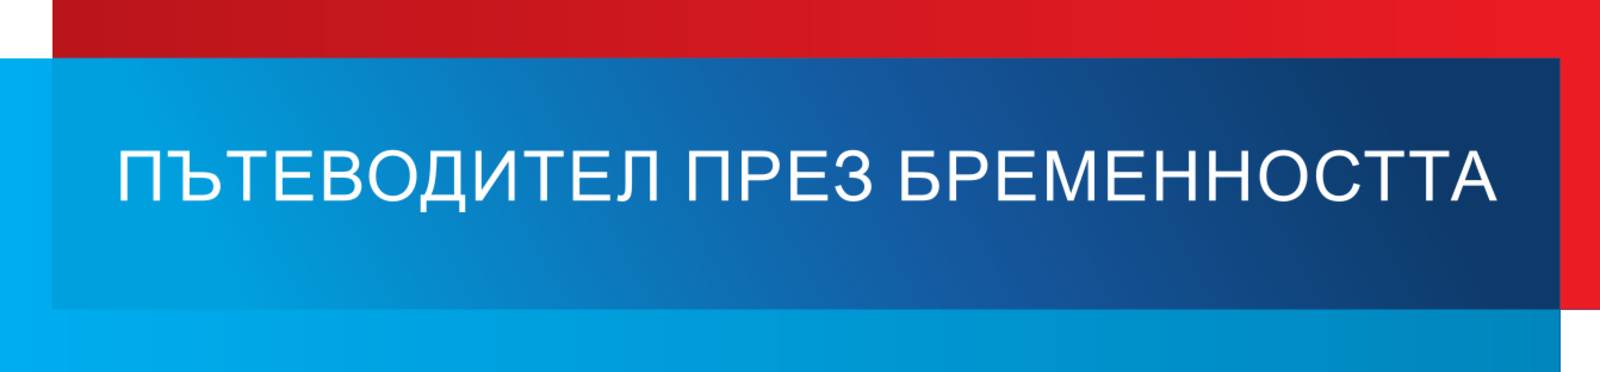 Grafisches Modul in den Farben Blau und Rot, dazu der Text: "ПЪТЕВОДИТЕЛ ПРЕЗ БРЕМЕННОСТТА"